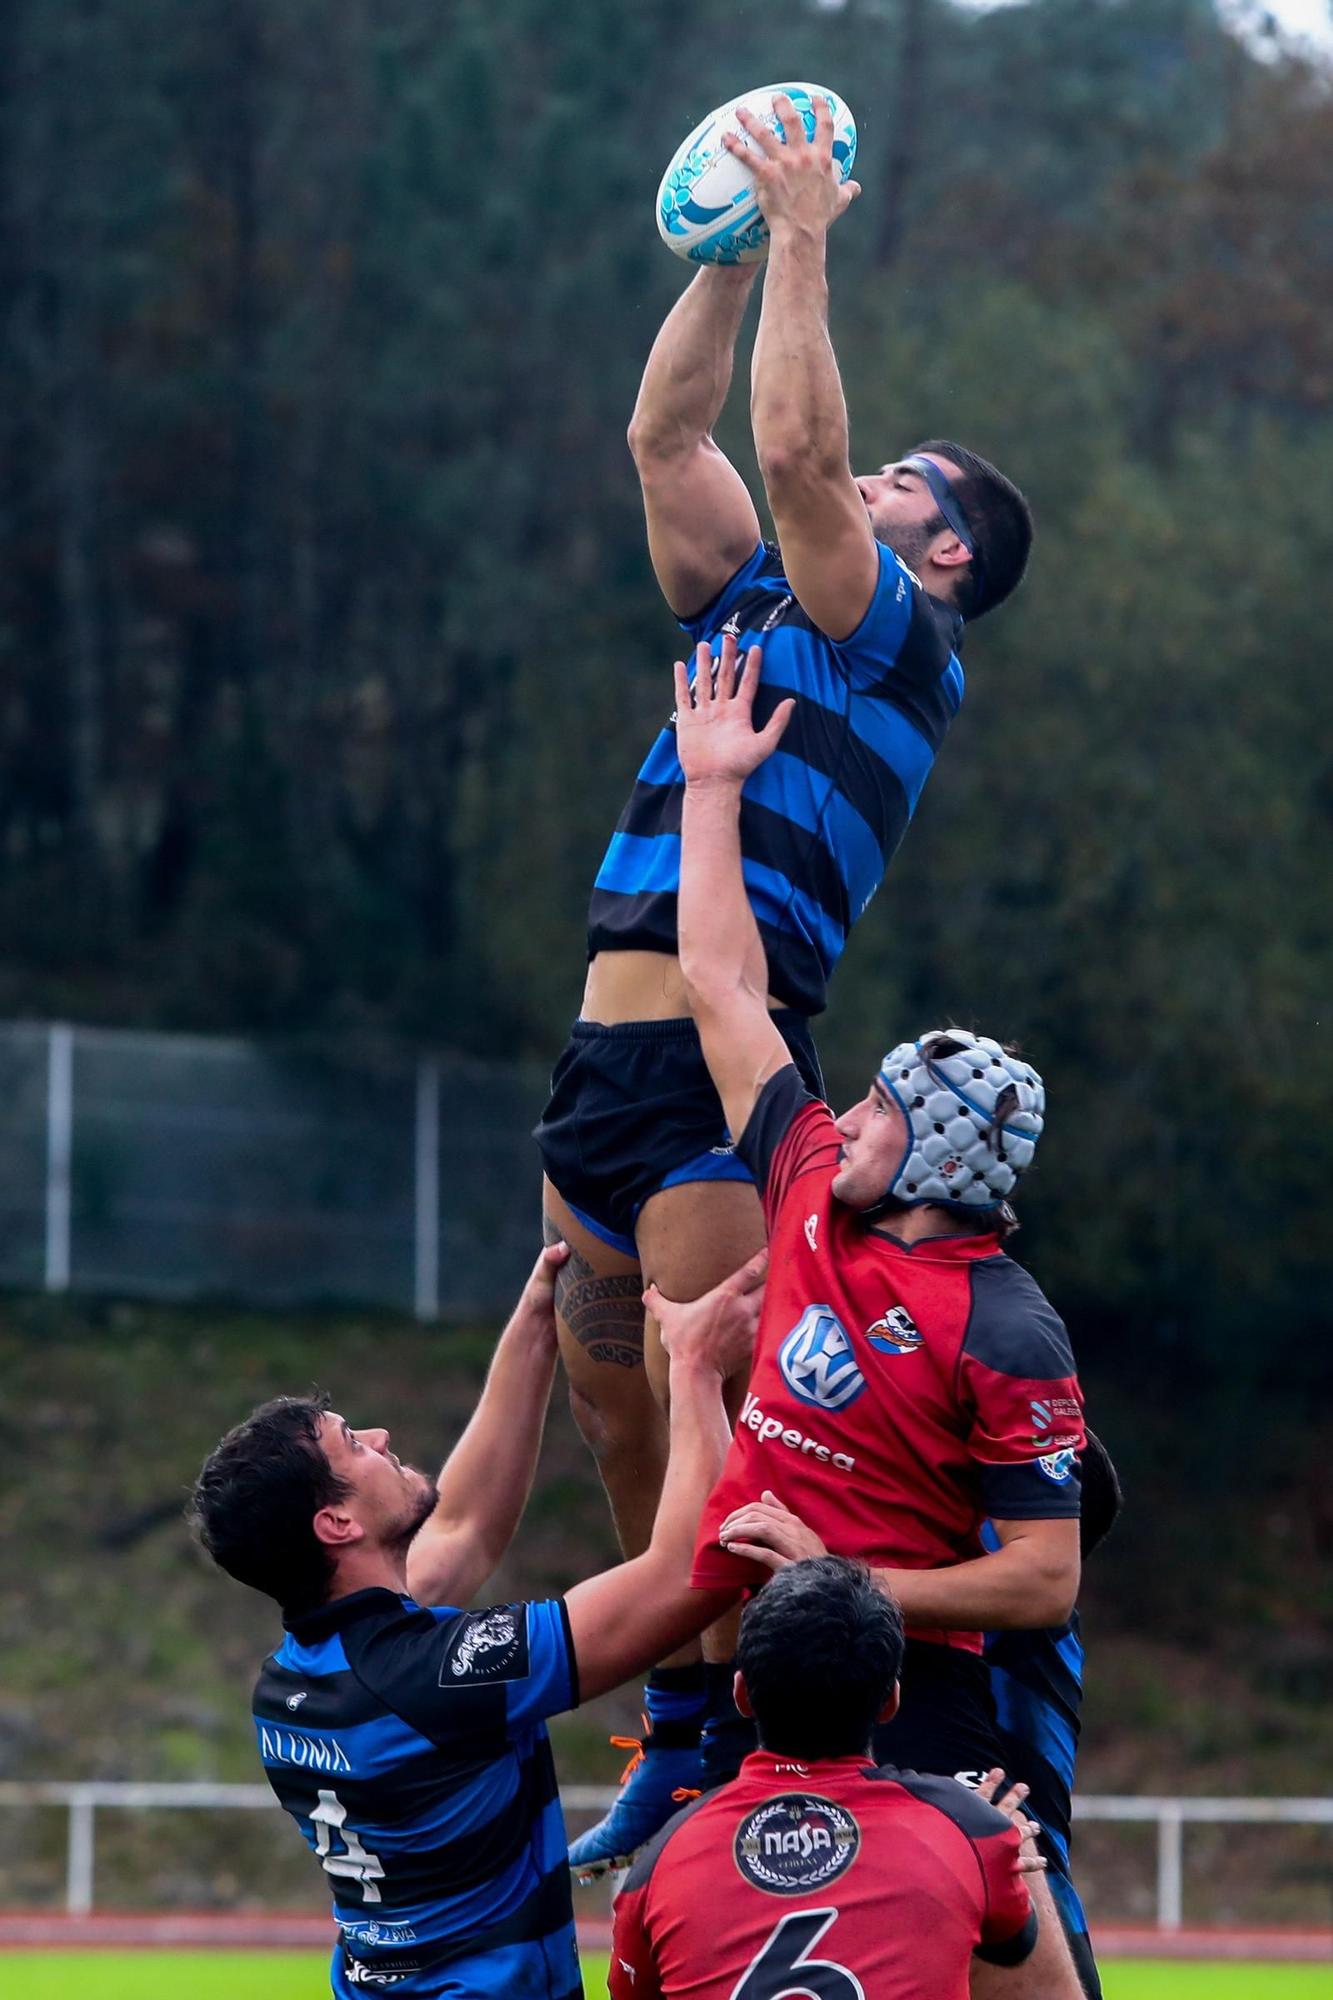 Las mejores imágenes de la victoria del Os Ingleses ante el Pontevedra Rugby Club